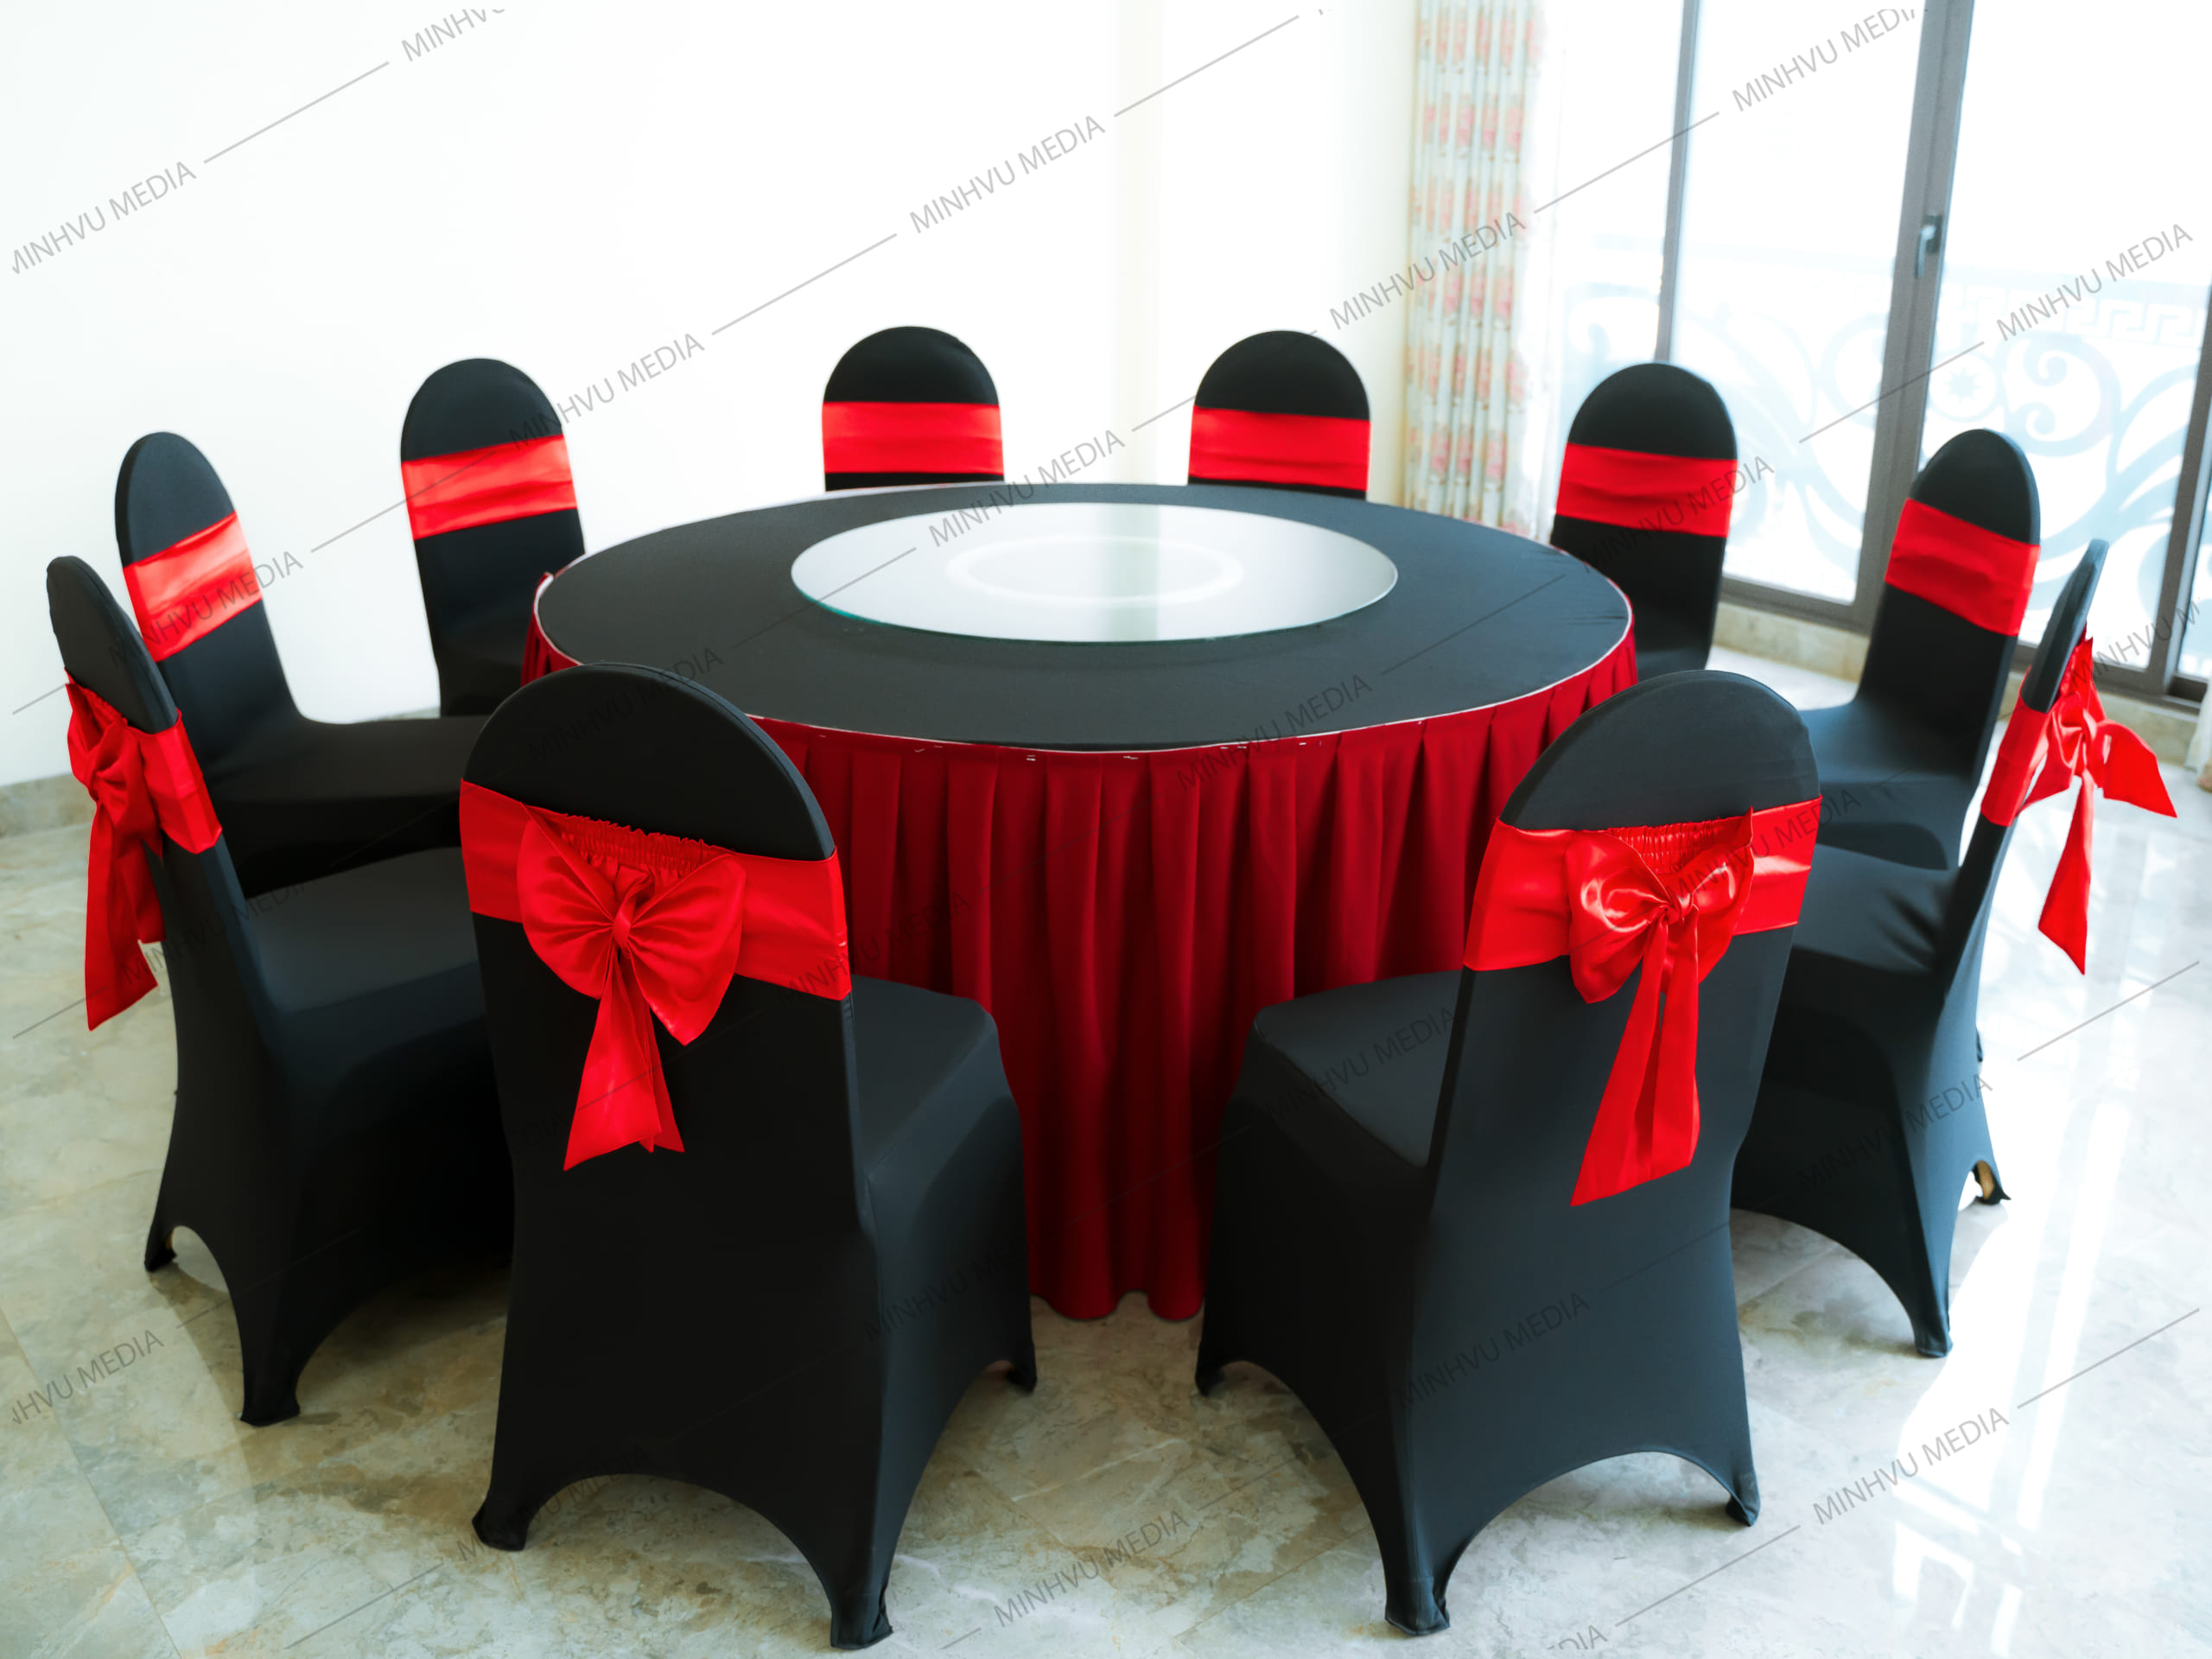 Bàn ghế banquet tròn đen - đỏ